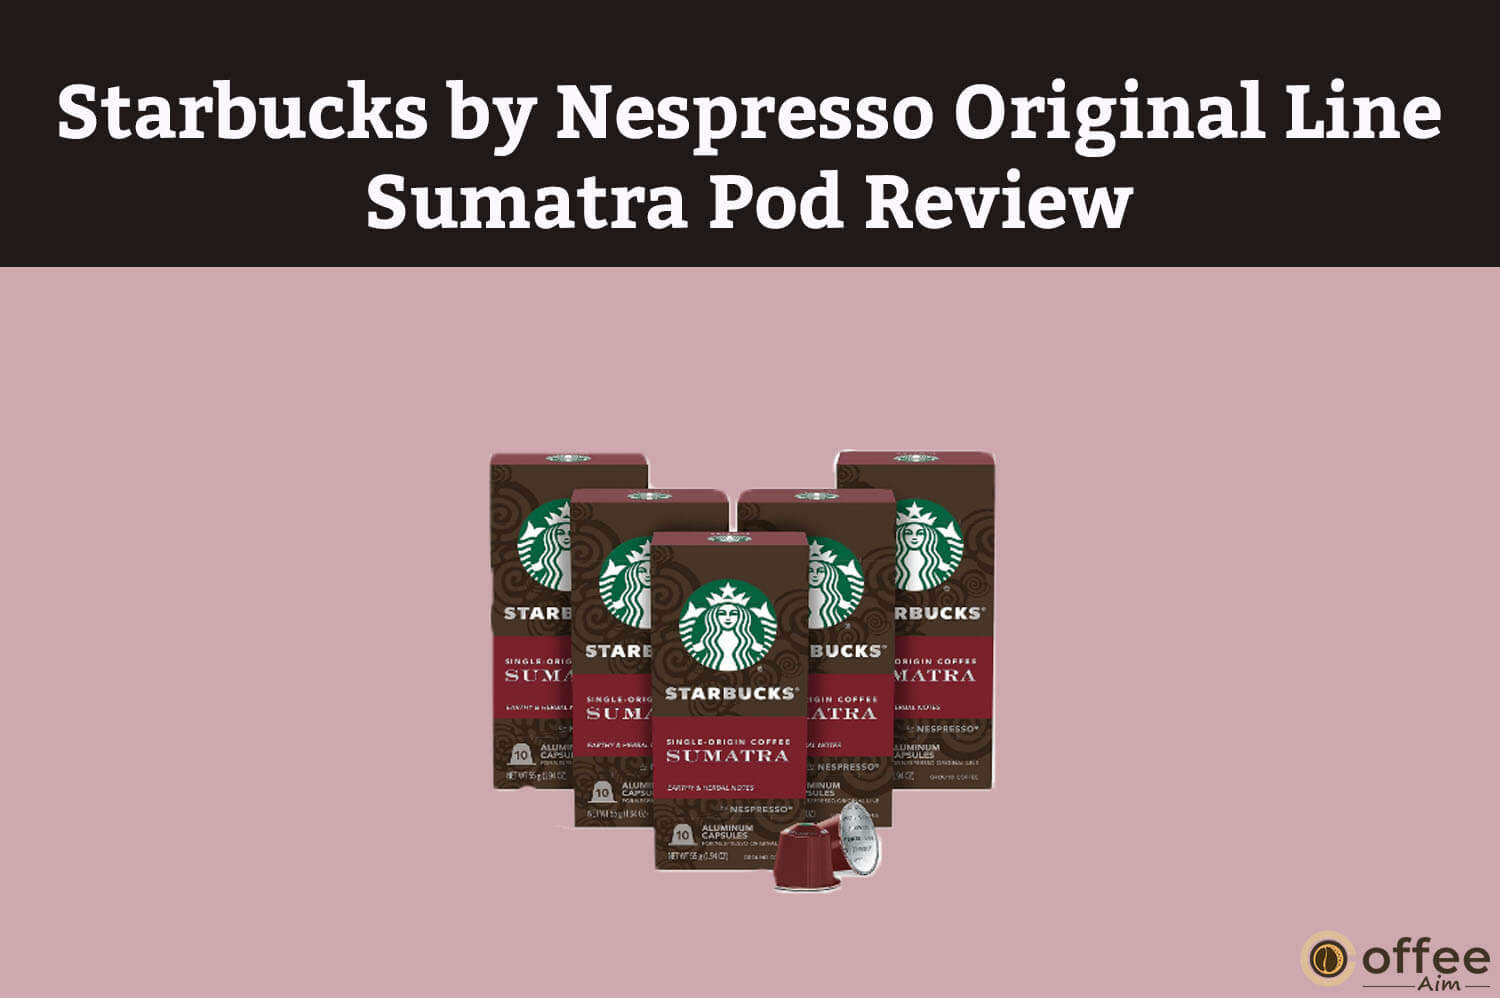 Starbucks by Nespresso Original Line Sumatra Pod Review